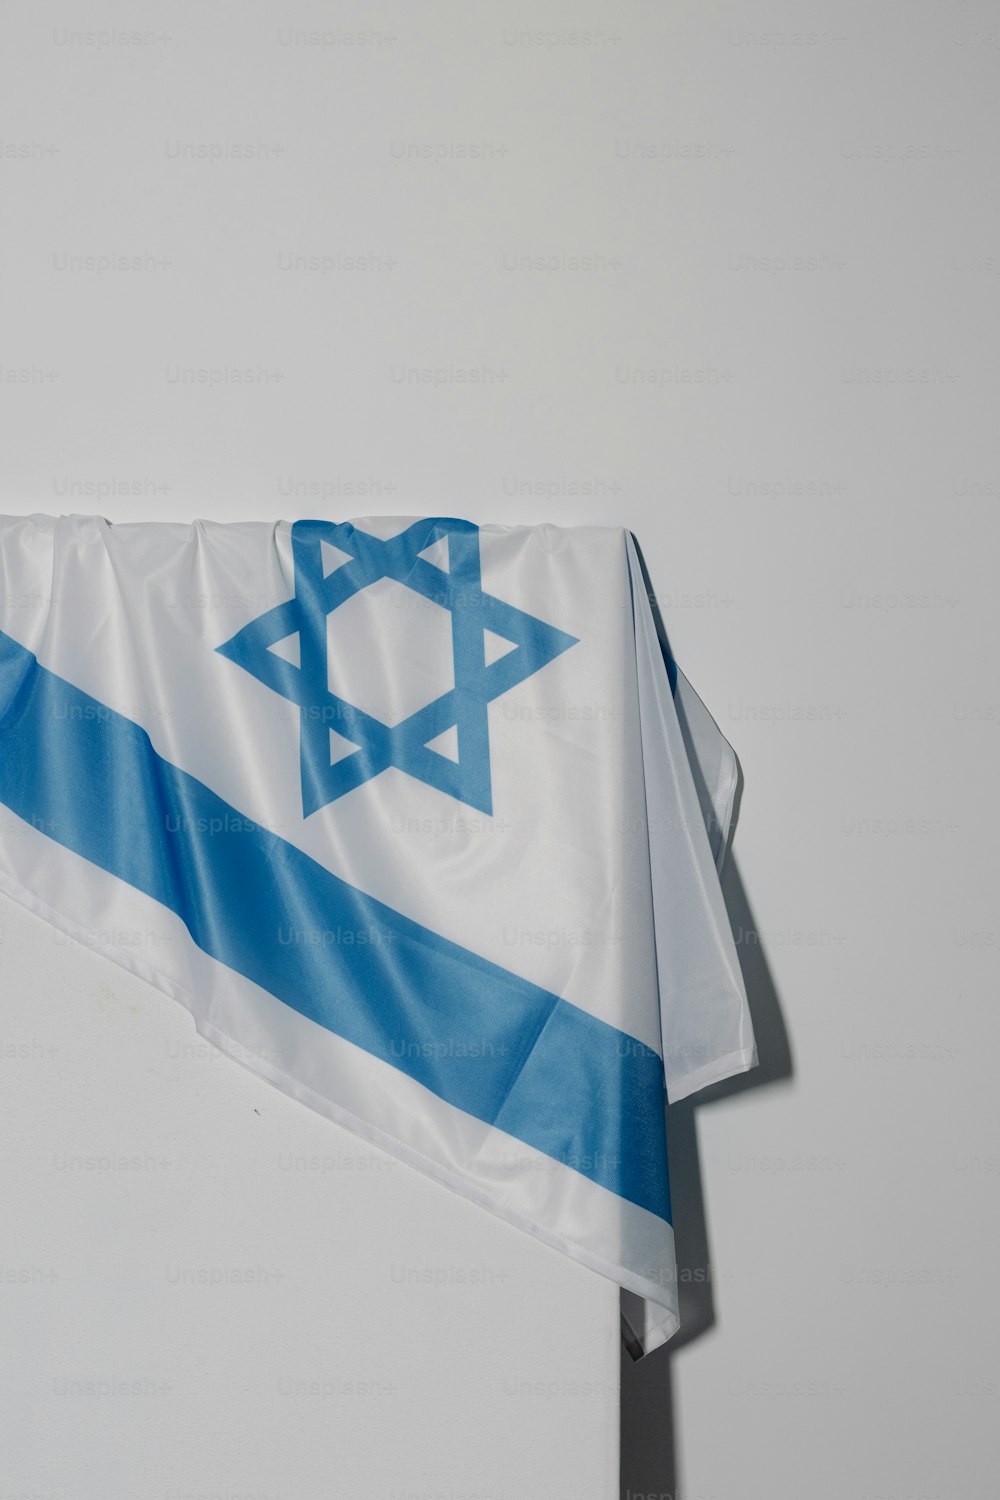 Una bandera con una estrella de David en ella